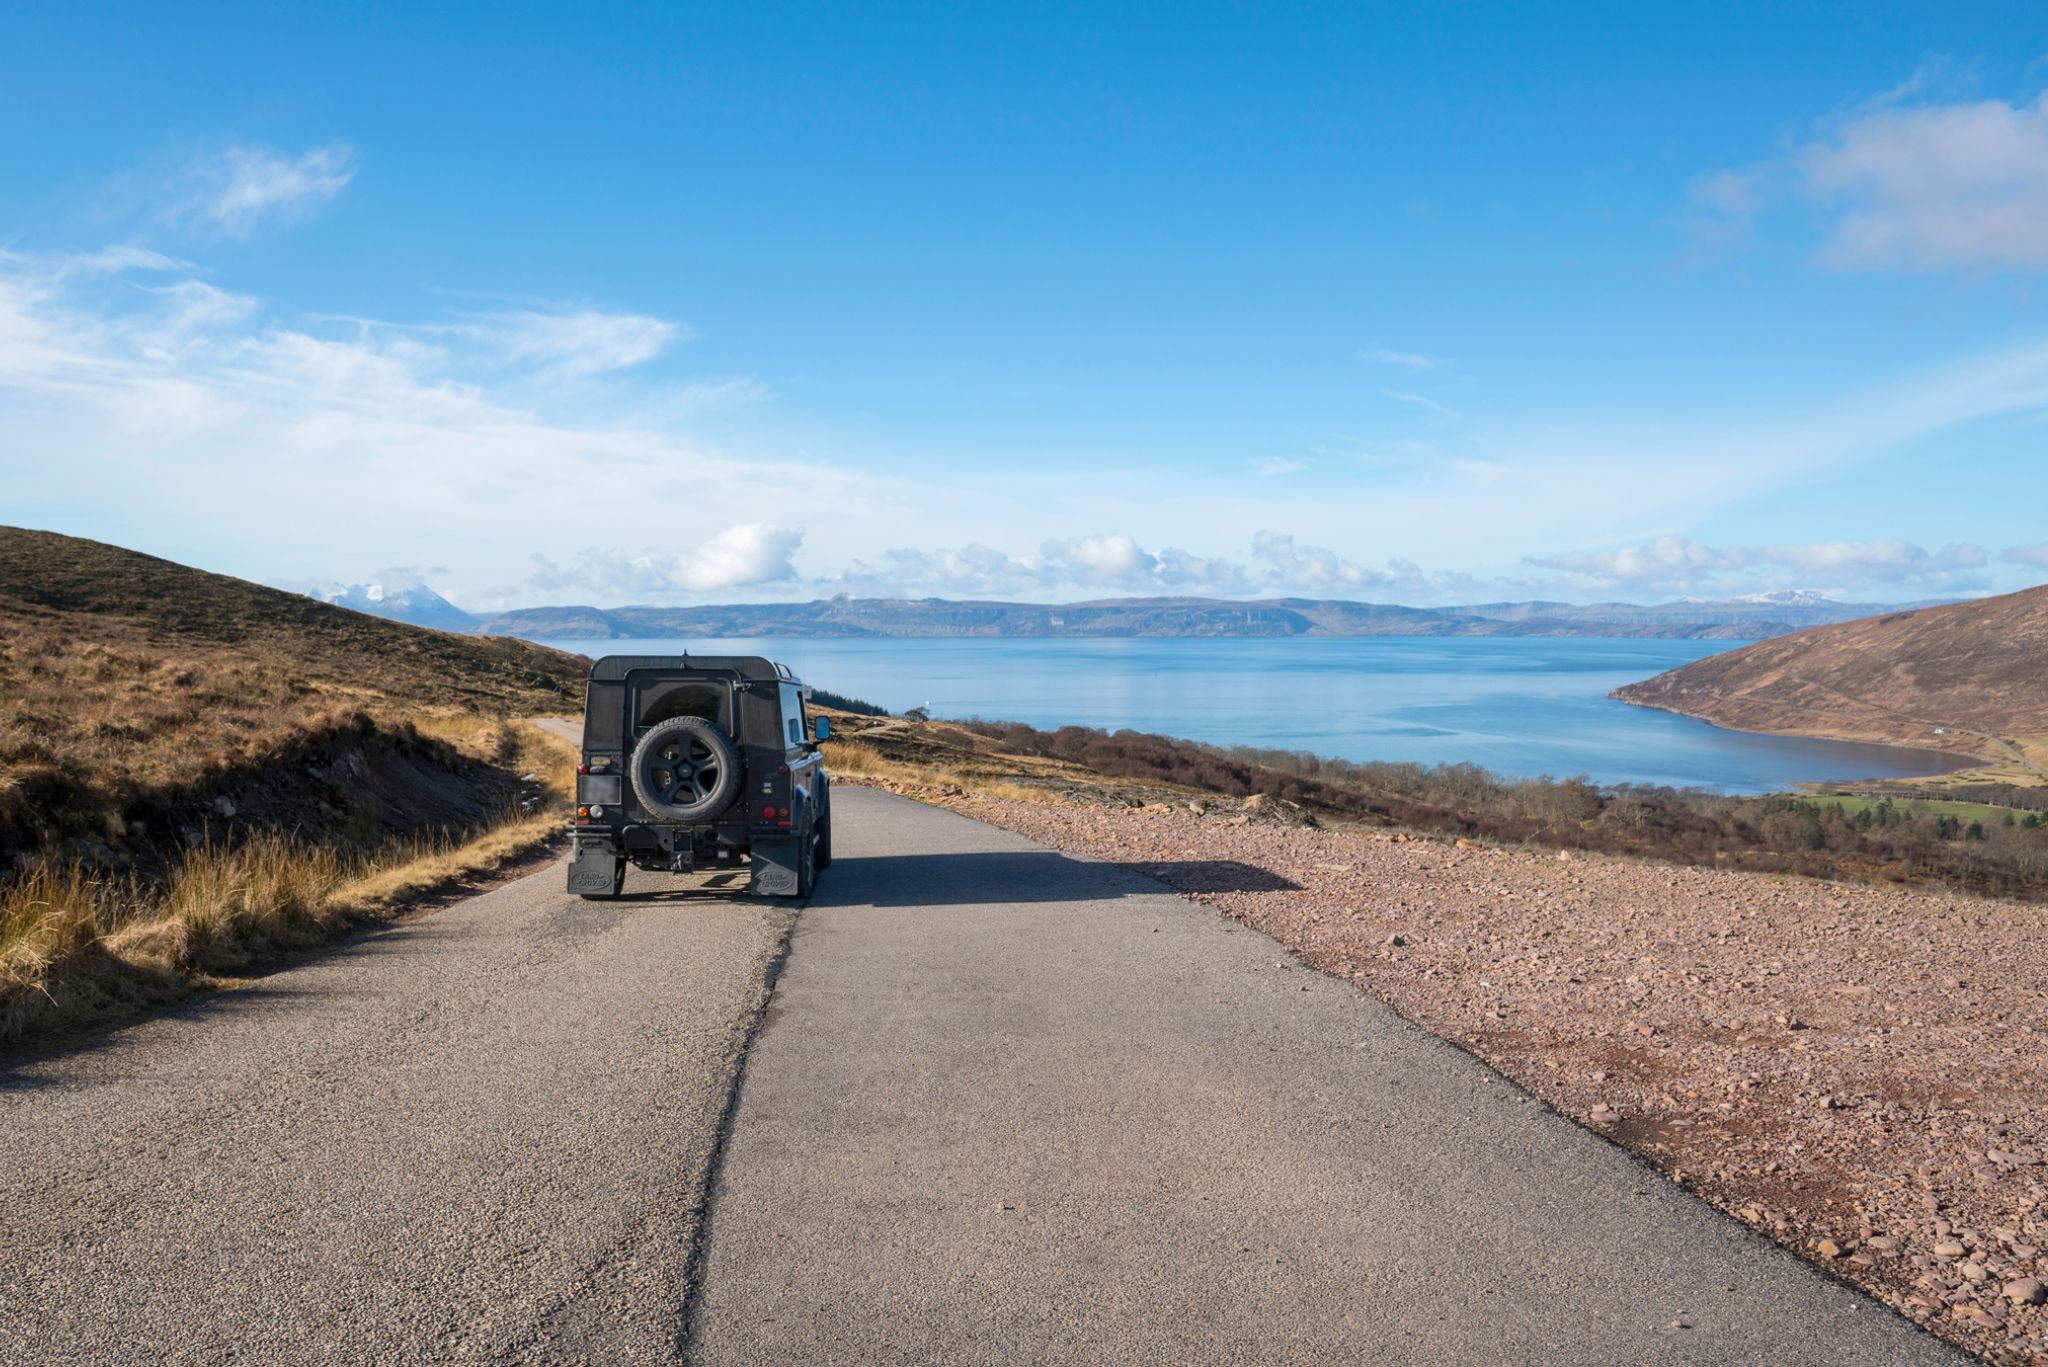 Guidare in Scozia: Limiti, patenti e domande frequenti